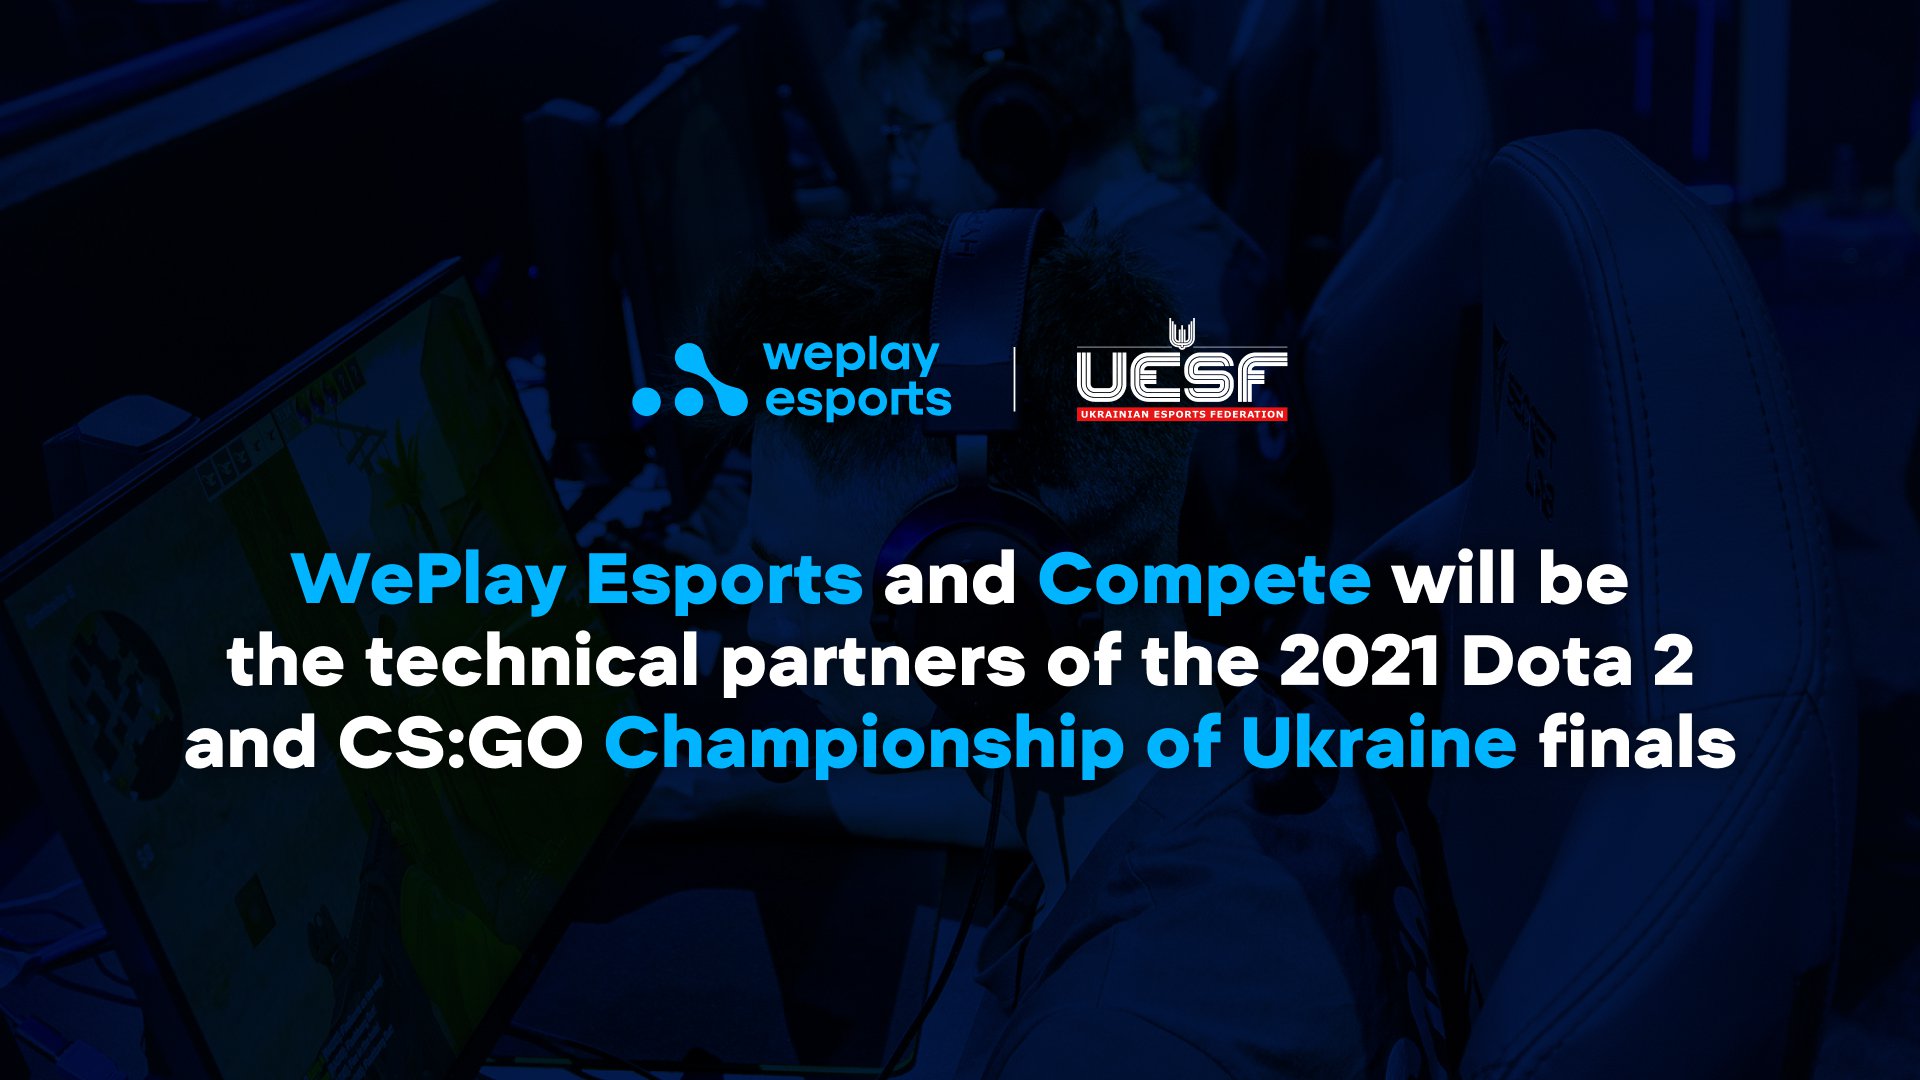 WePlay Esports y Compete serán socios técnicos de las finales del Campeonato de Ucrania de Dota 2 y CS:GO en 2021. Imagen: WePlay Holding